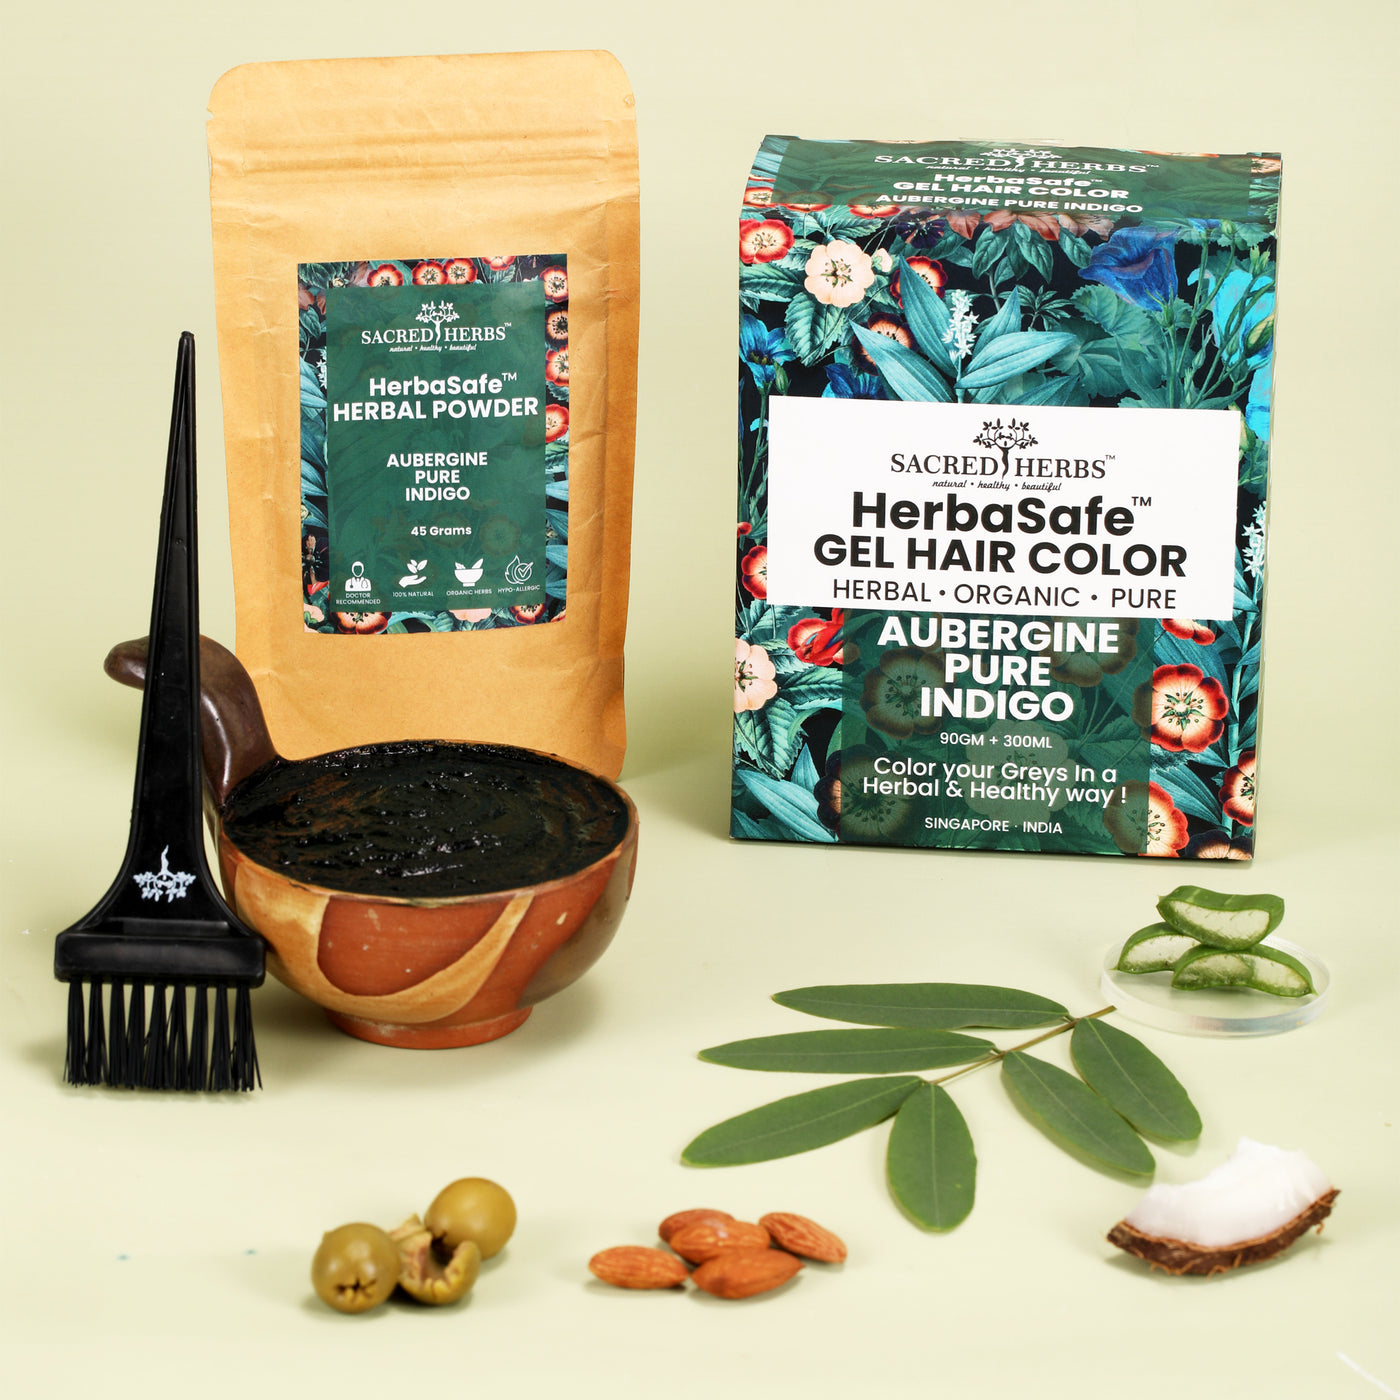 HerbaSafe Hypo-Allergic Herbal Hair Color